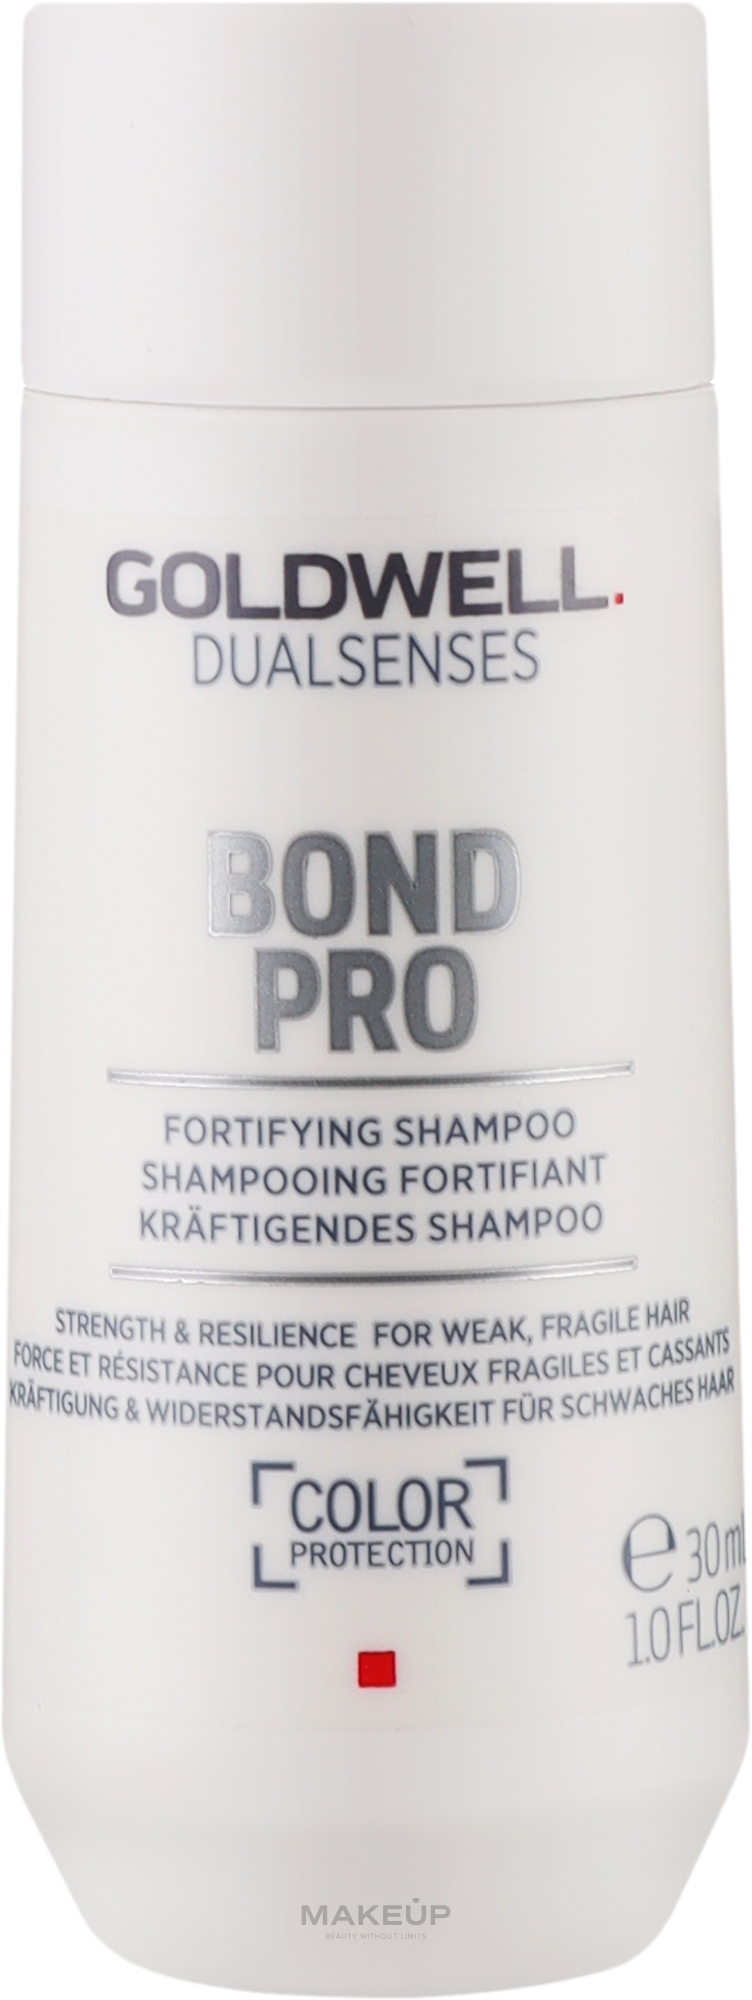 Укрепляющий шампунь для тонких и ломких волос - Goldwell DualSenses Bond Pro Fortifying Shampoo (мини) — фото 30ml